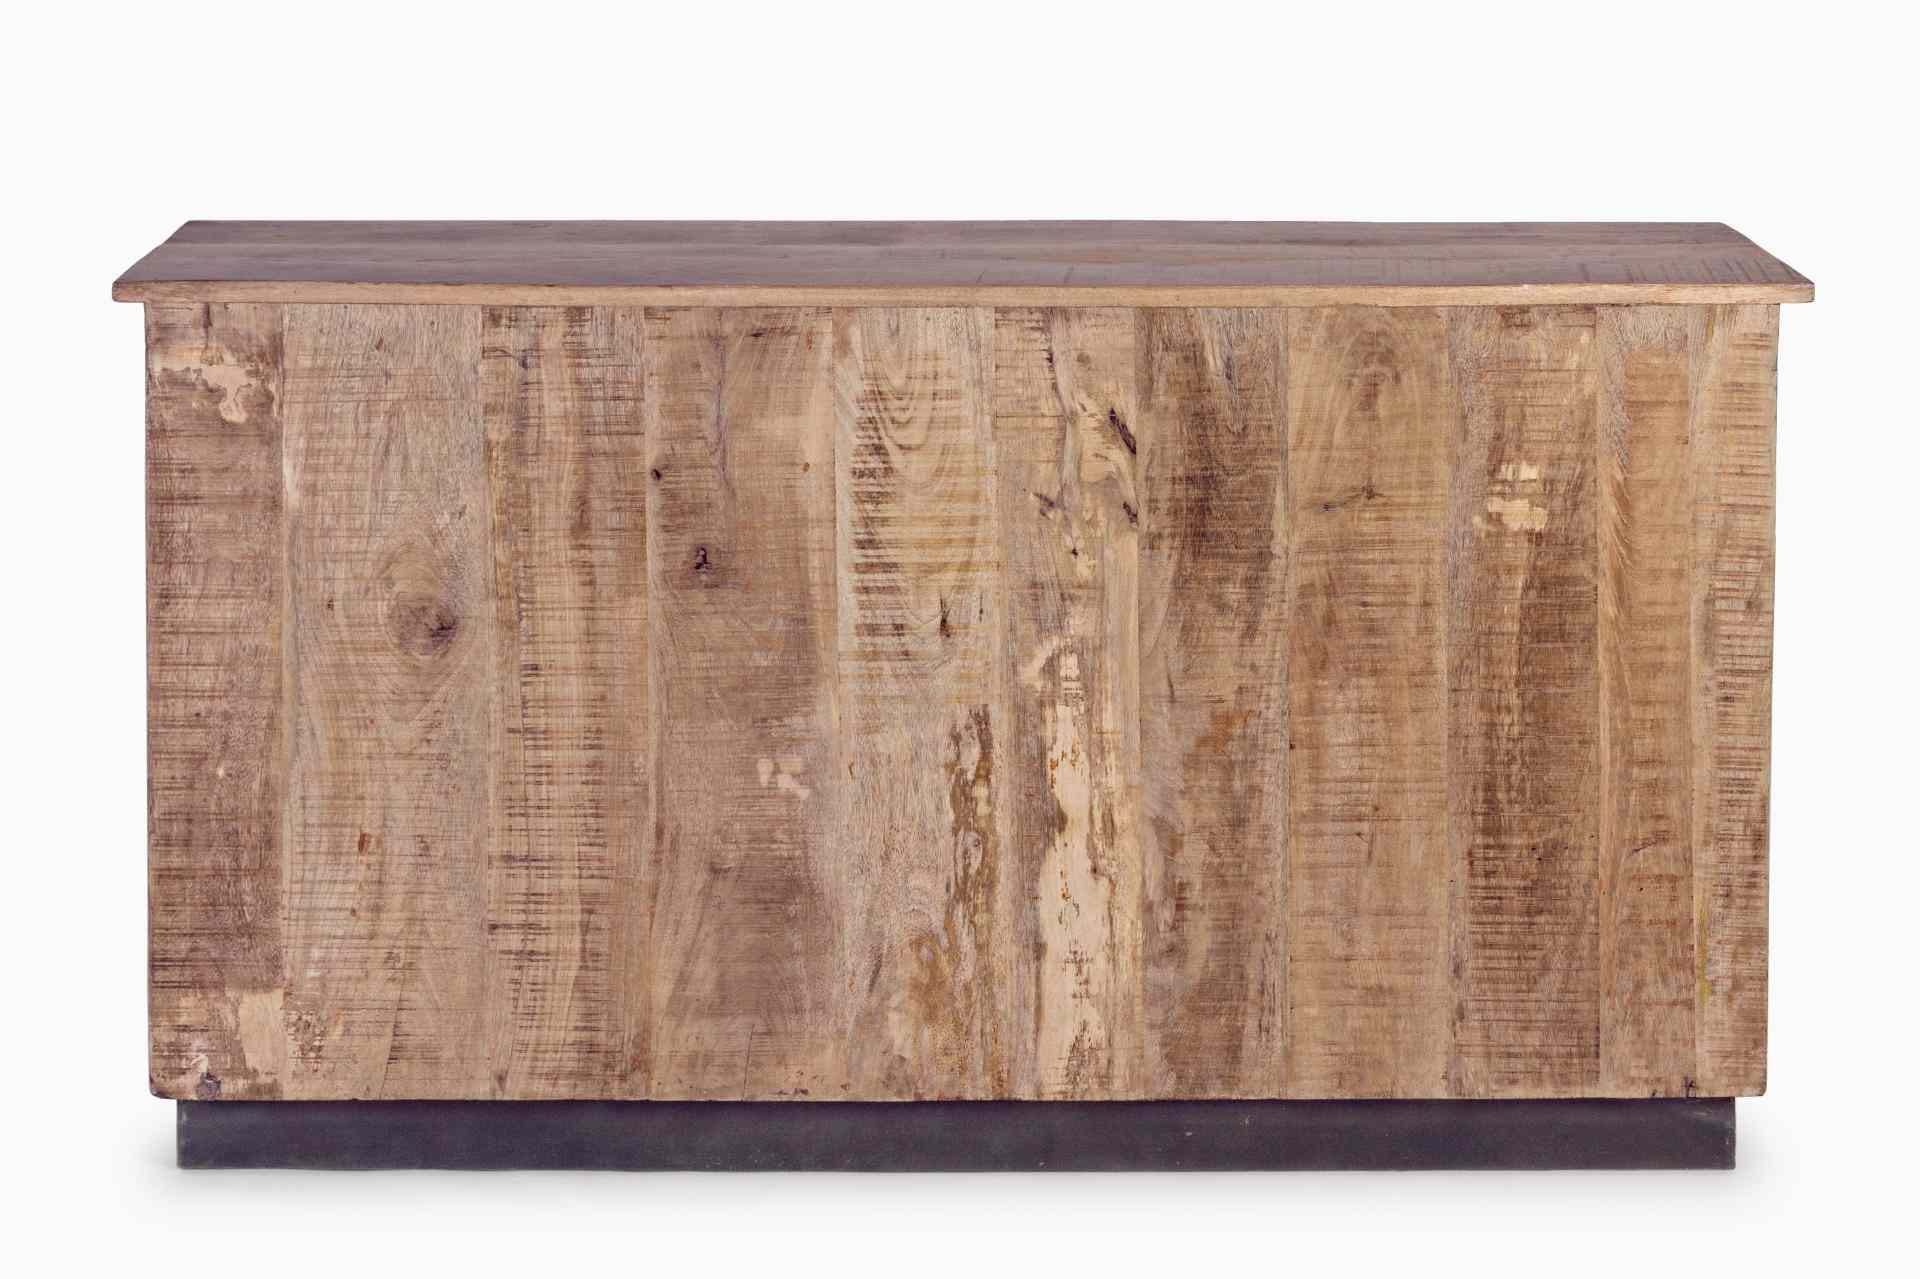 Das Sideboard Tudor überzeugt mit seinem klassischen Design. Gefertigt wurde es aus Mango-Holz, welches einen natürlichen Farbton besitzt. Das Gestell ist auch aus Mango-Holz. Das Sideboard verfügt über zwei Türen und drei Schubladen. Die Breite beträgt 1